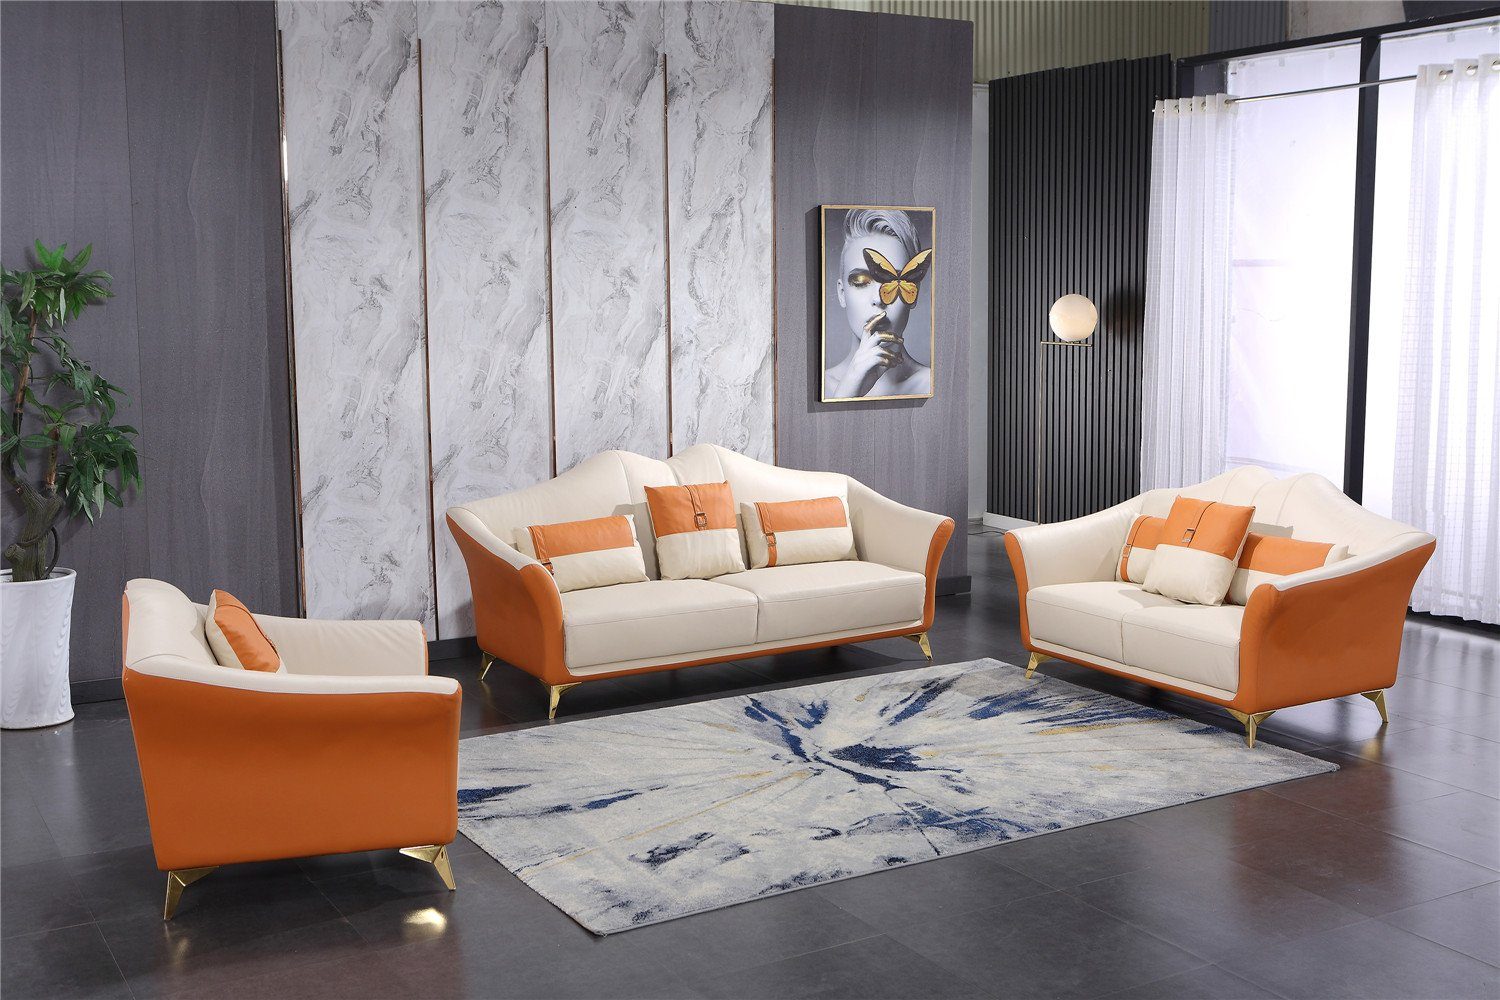 JVmoebel Sofa Orange-weiße Sofagarnitur 3+1+1 Sitzer Garnituren Moderne Sofas, Made in Europe